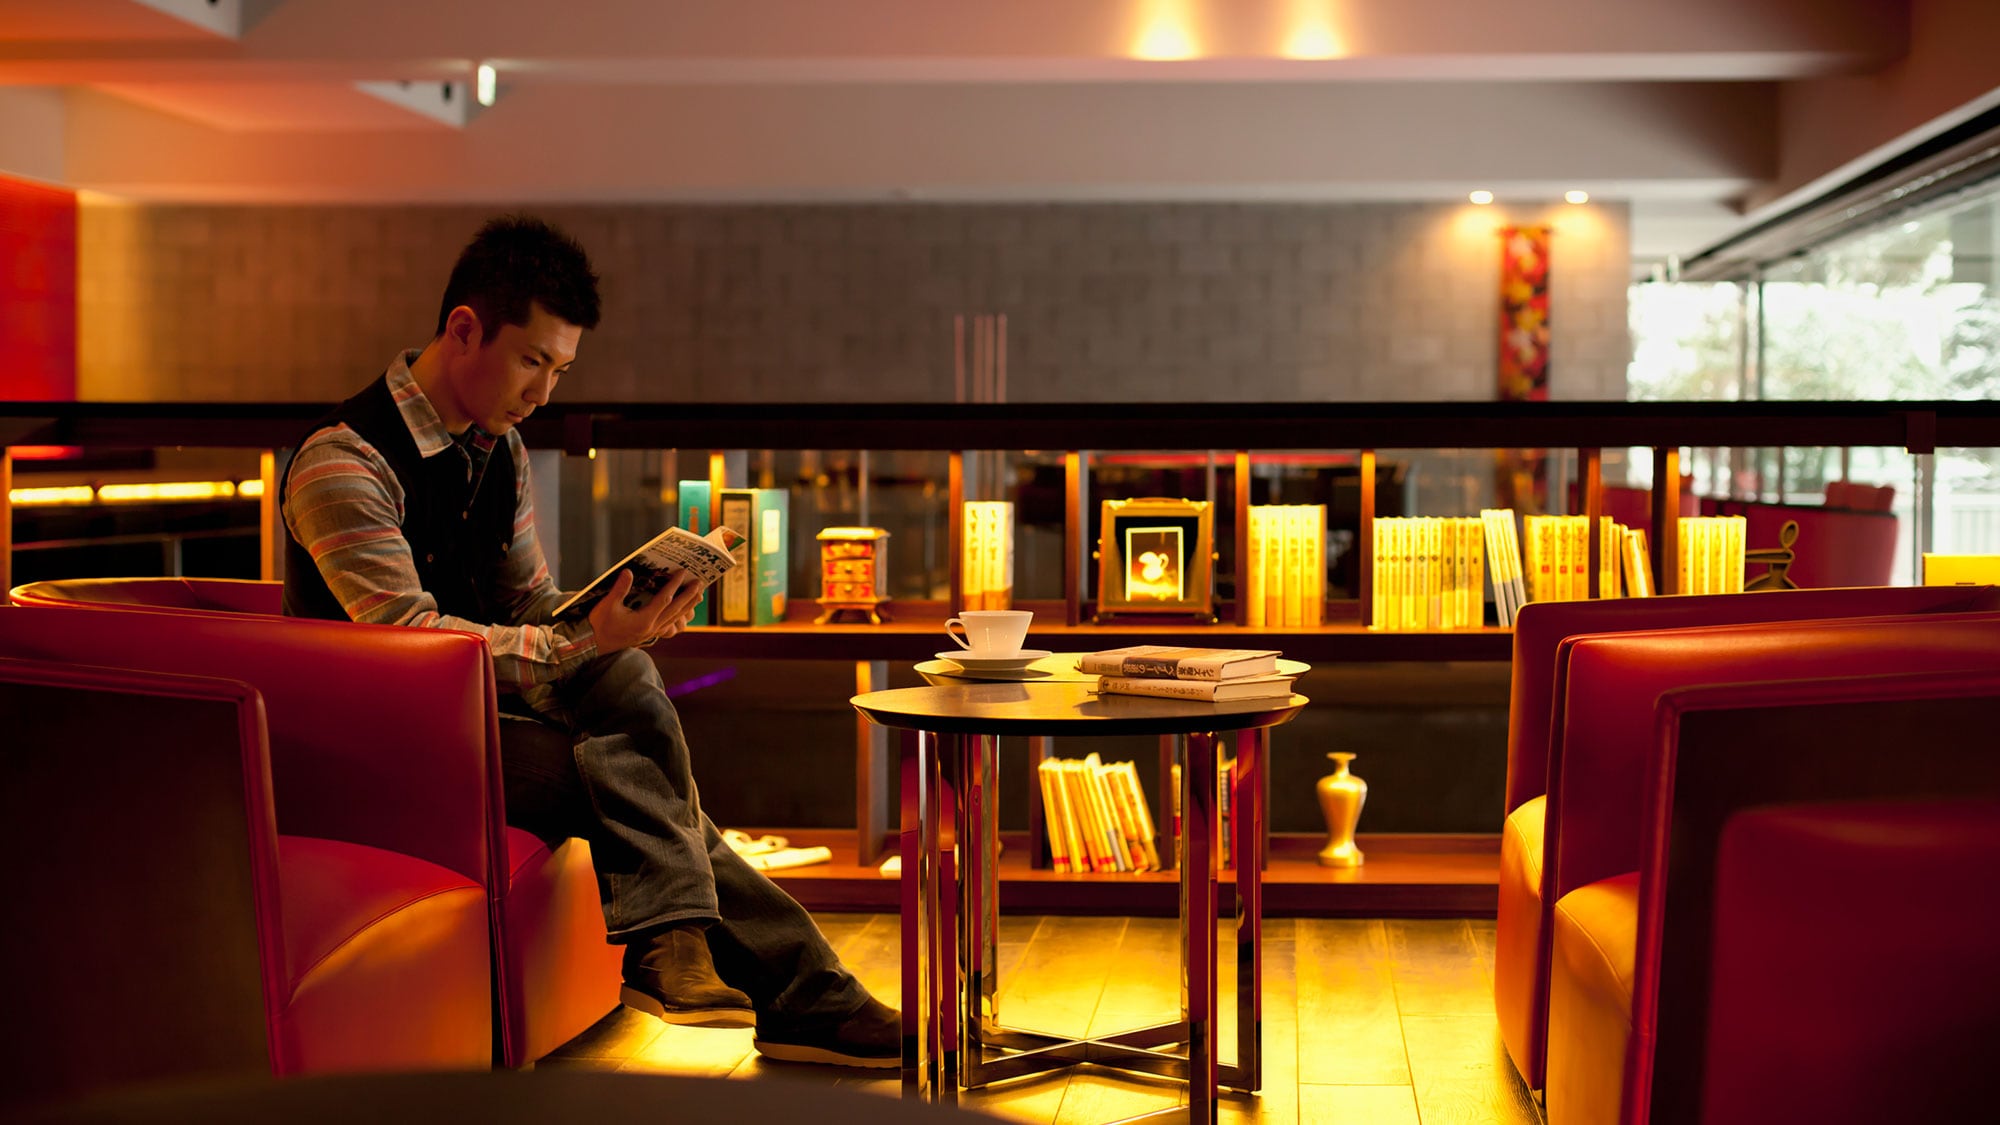 [Noguchi Bunko] คุณสามารถอ่านหนังสือที่คุณชื่นชอบได้อย่างอิสระที่บาร์หรือเลานจ์หรือนำไปที่ห้องของคุณ